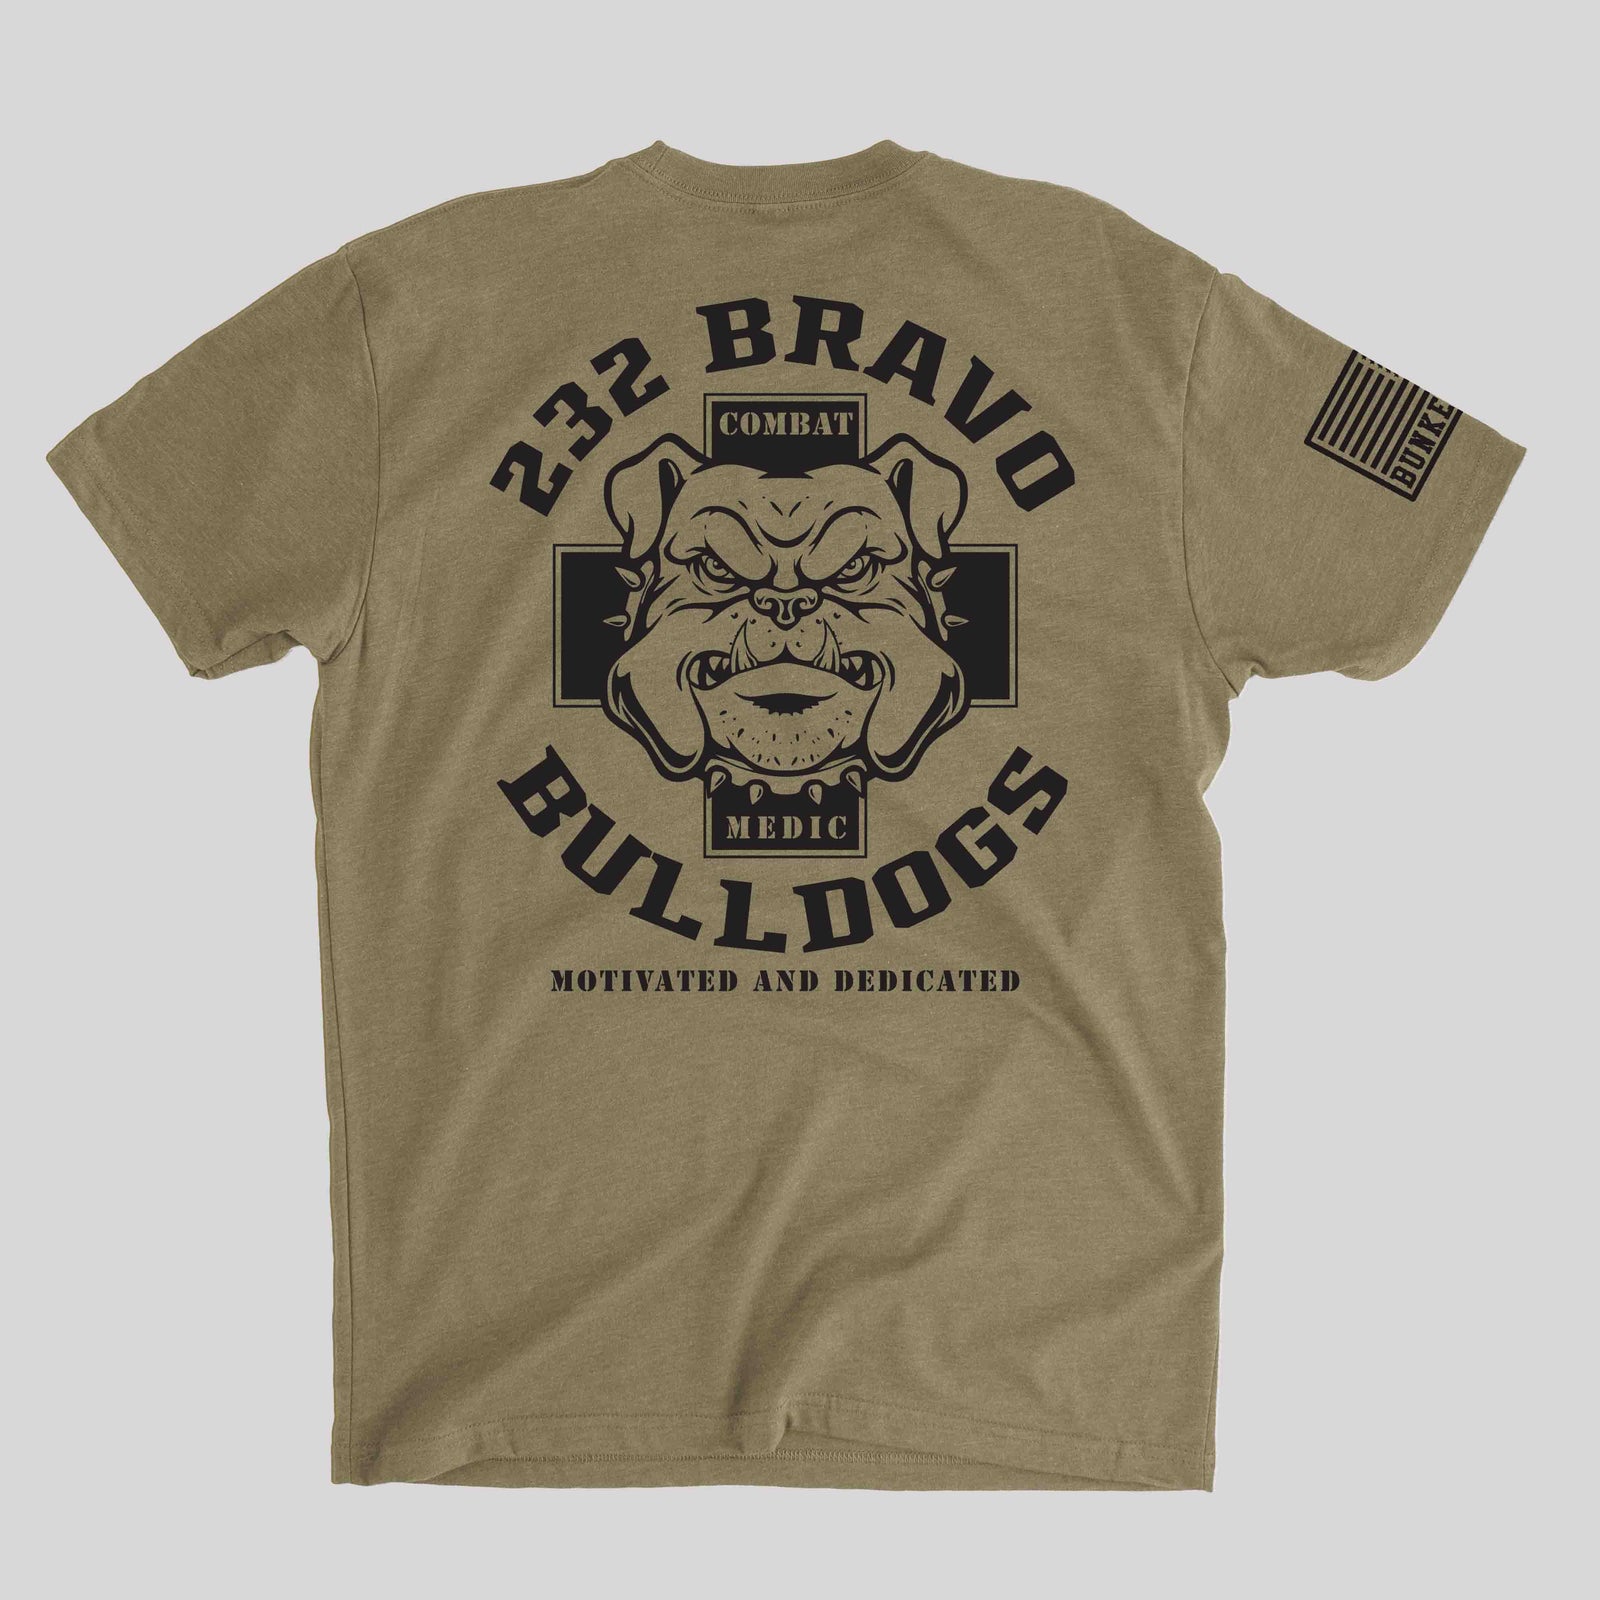 232 Bravo Company - Bulldogs